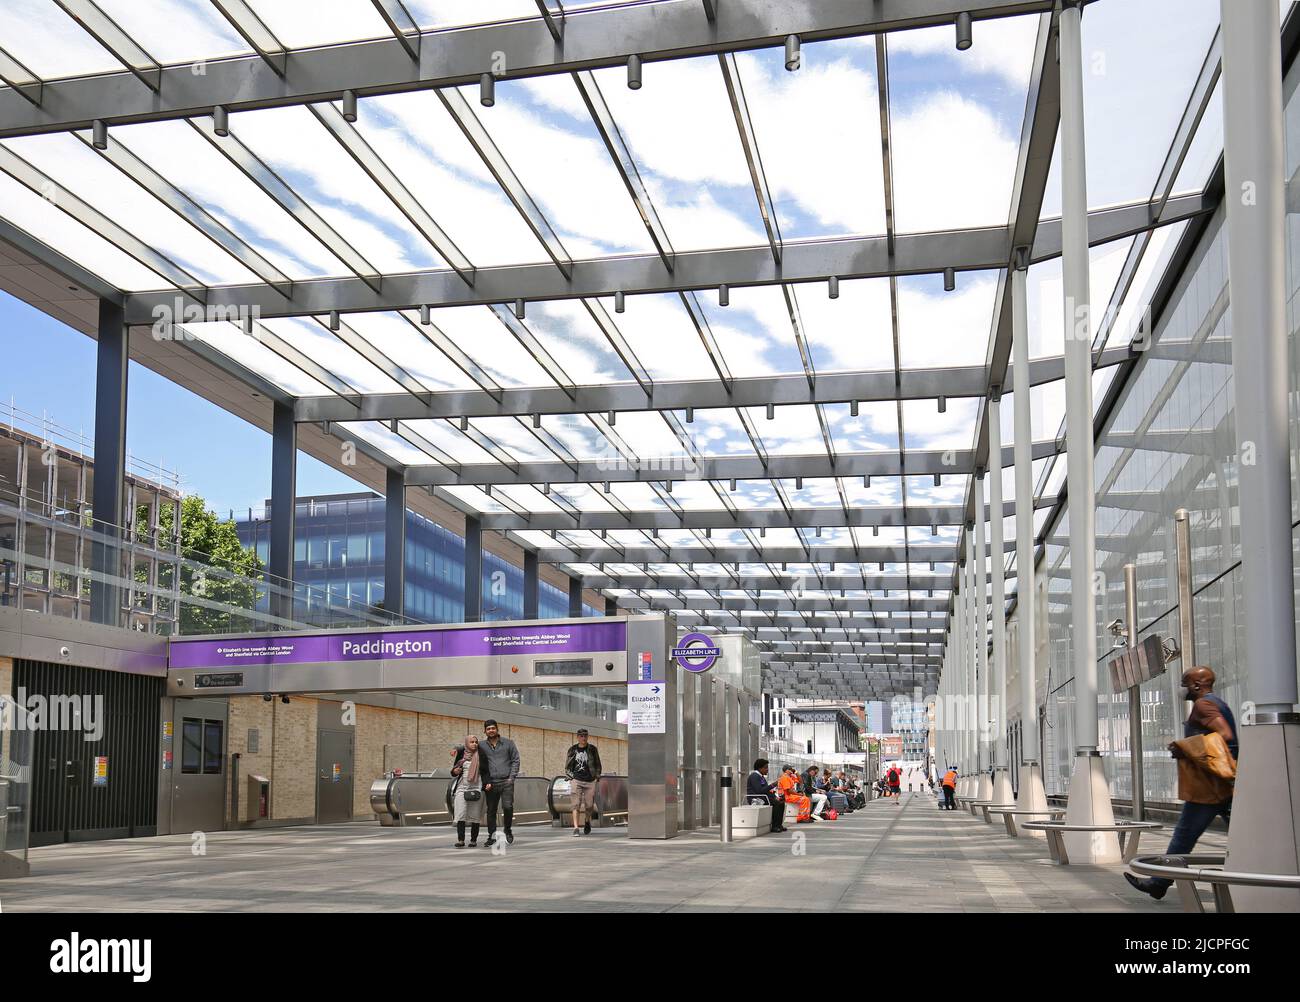 Nouveau hall Elizabeth Line (Crossrail) au niveau du sol à la gare de Paddington, Londres, Royaume-Uni. Montre le toit en verre imprimé et l'accès des escaliers roulants aux trains. Banque D'Images